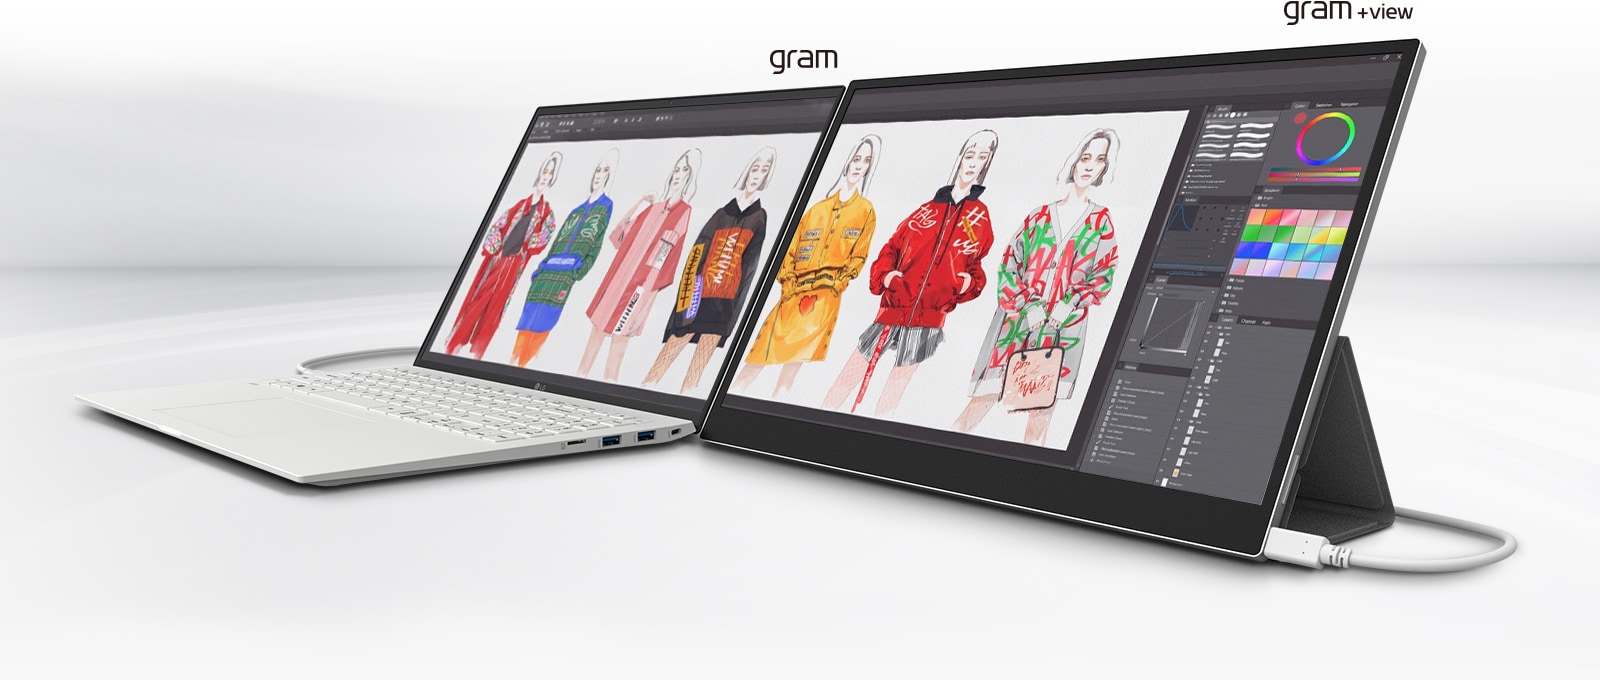 Scena, na której ekran laptopa gram jest rozszerzony przez monitor gram +view.